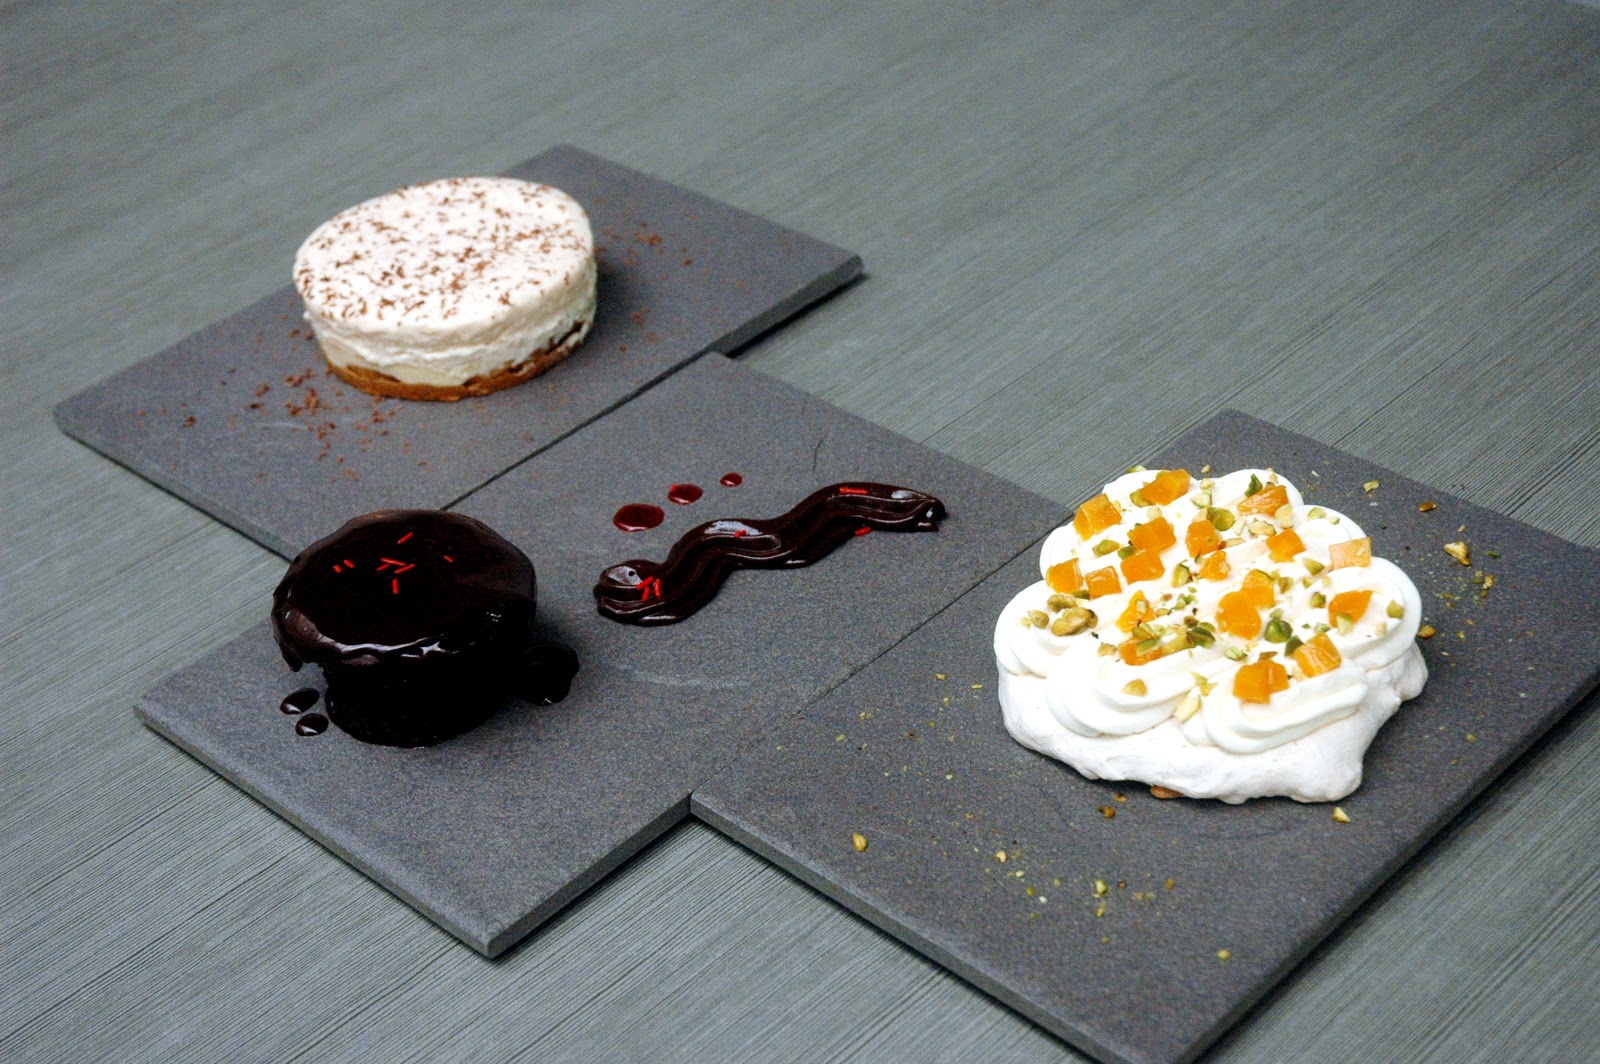 Indulgent Diner Dessert Dishes : IHOP desserts